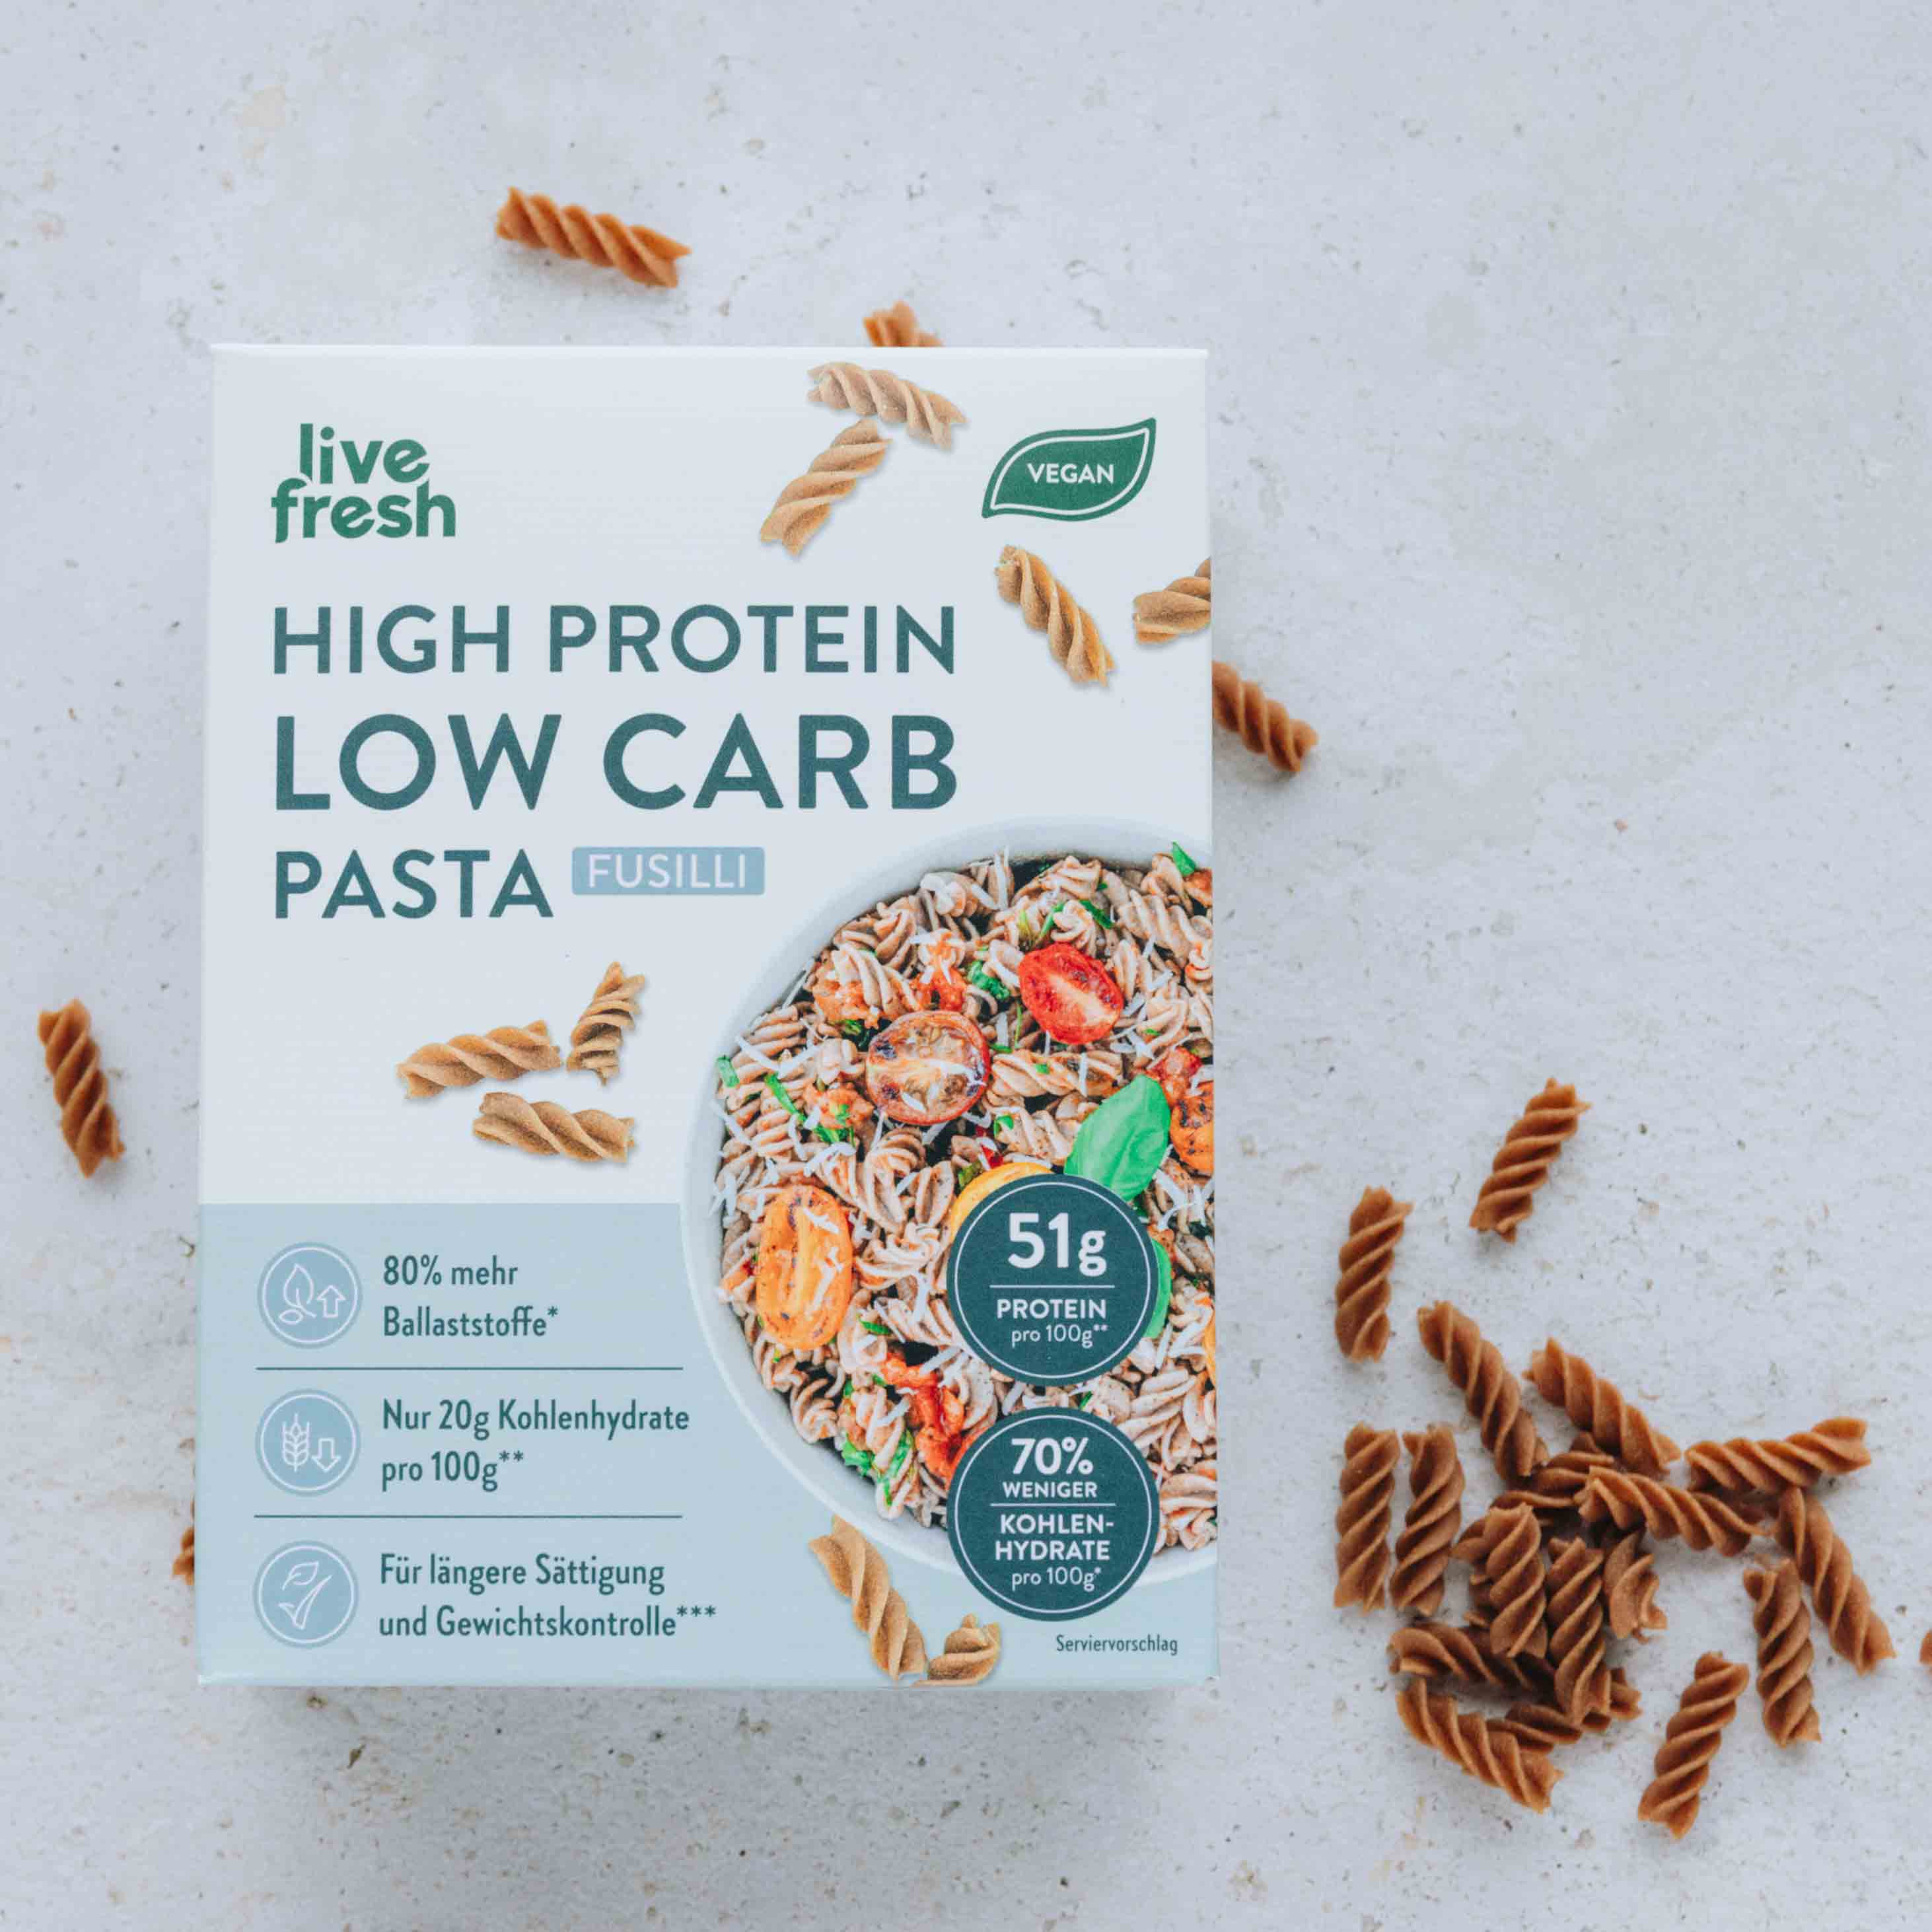 Verpackung von Live Fresh High Protein Low Carb Pasta Fusilli mit Nährwertangaben und veganem Siegel.